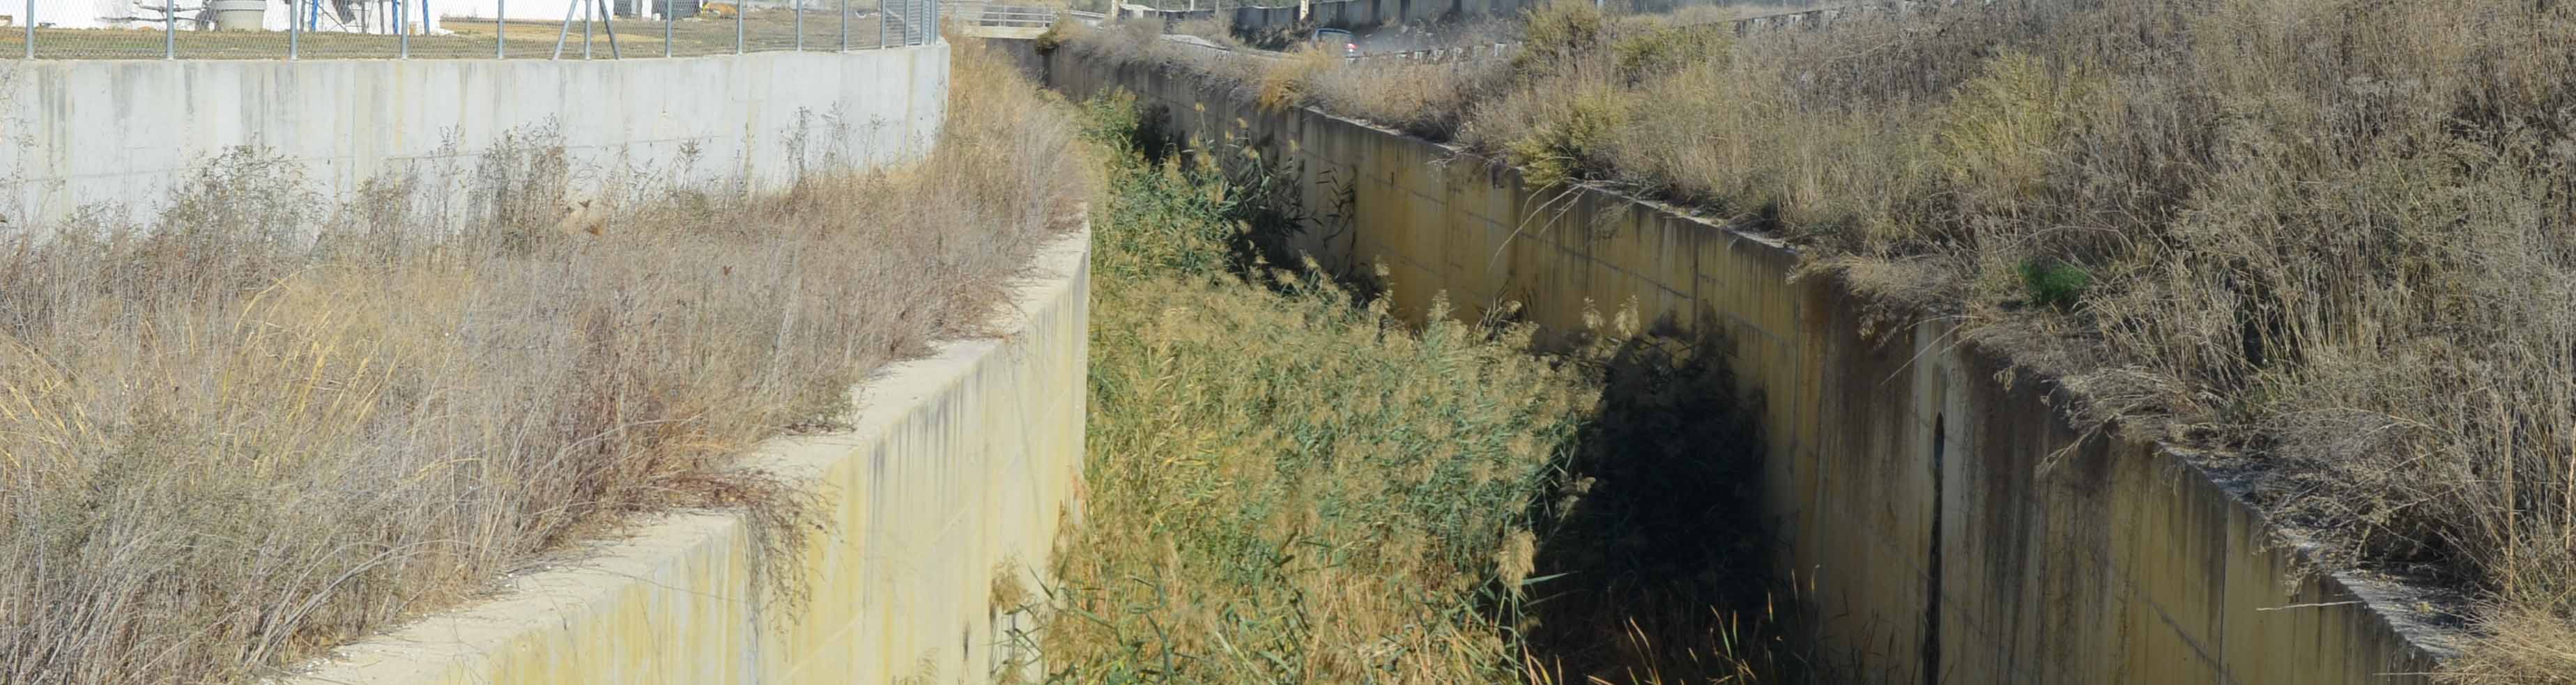 La vegetación se ha hecho dueña de este canal en Utrera